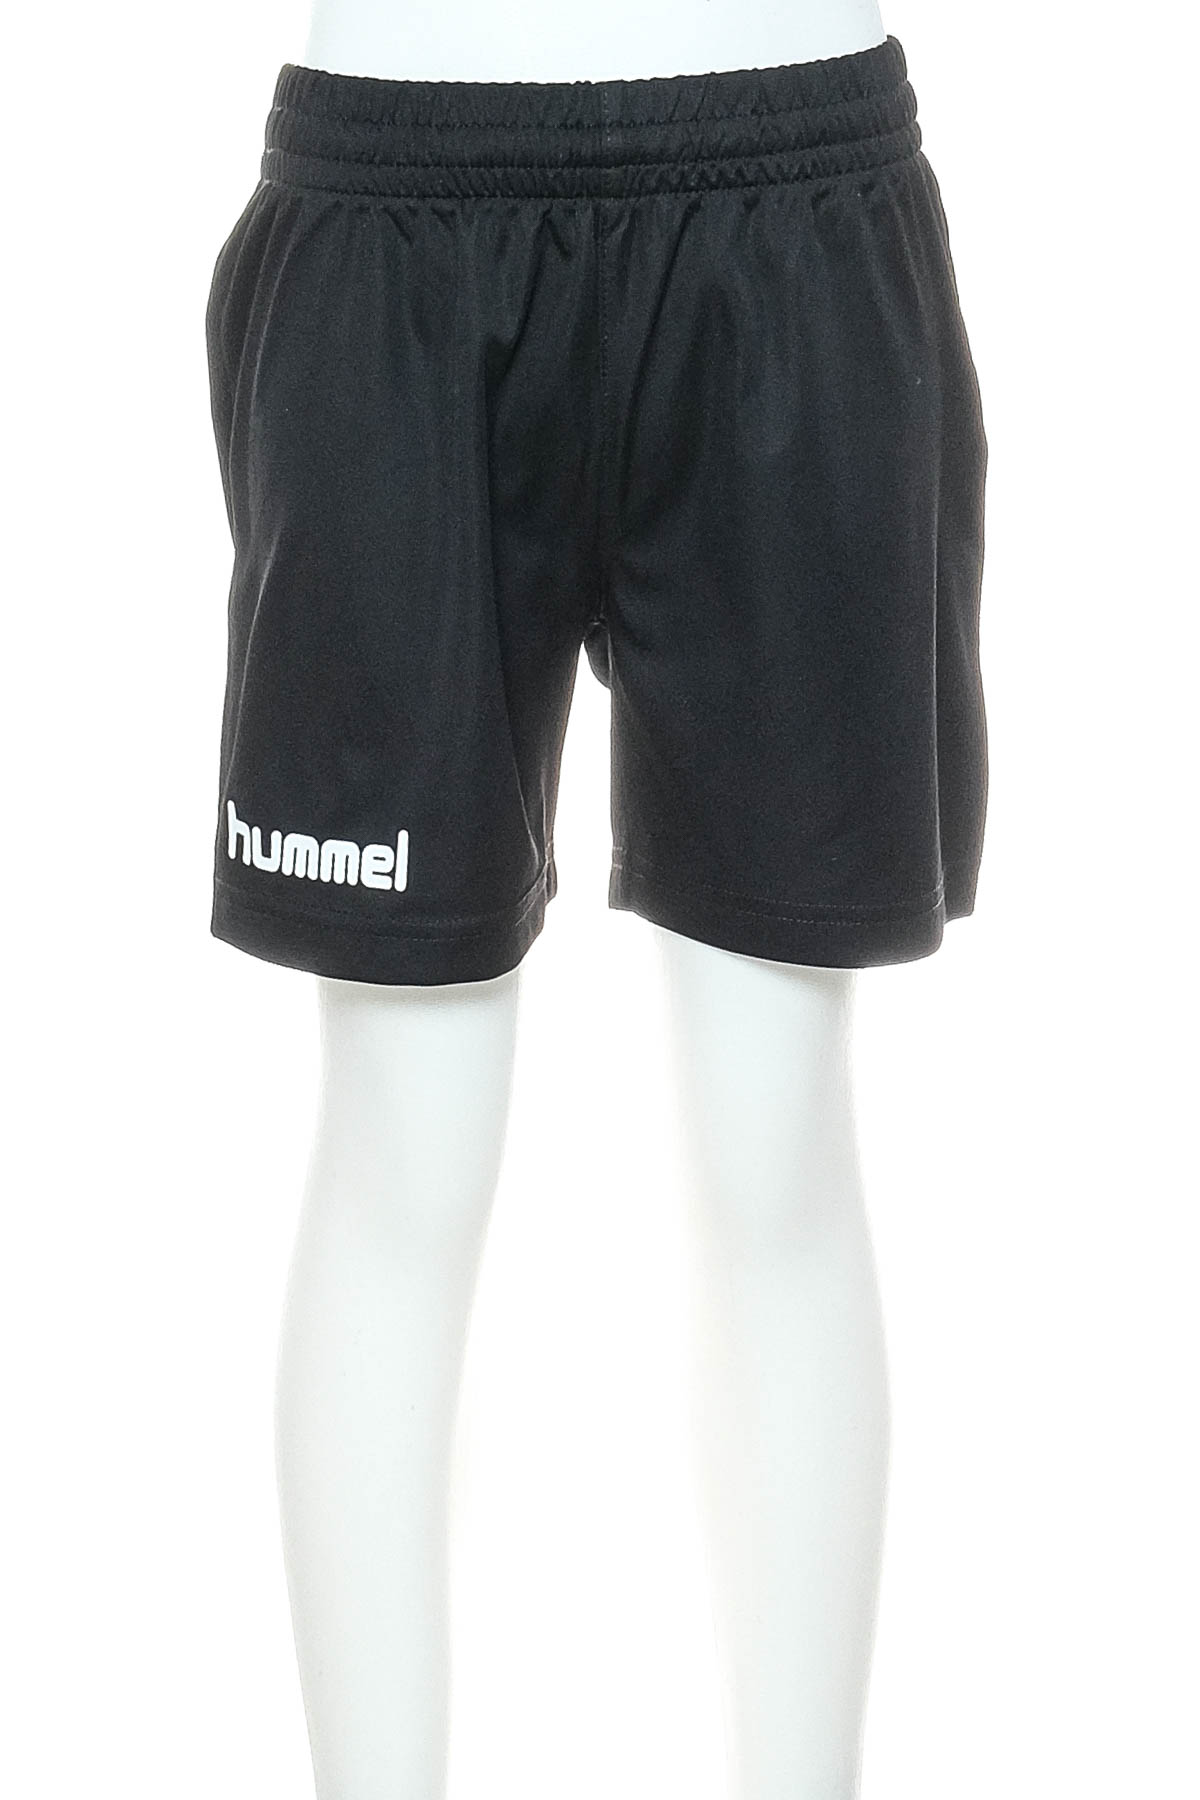 Pantaloni scurți pentru băiat - Hummel - 0